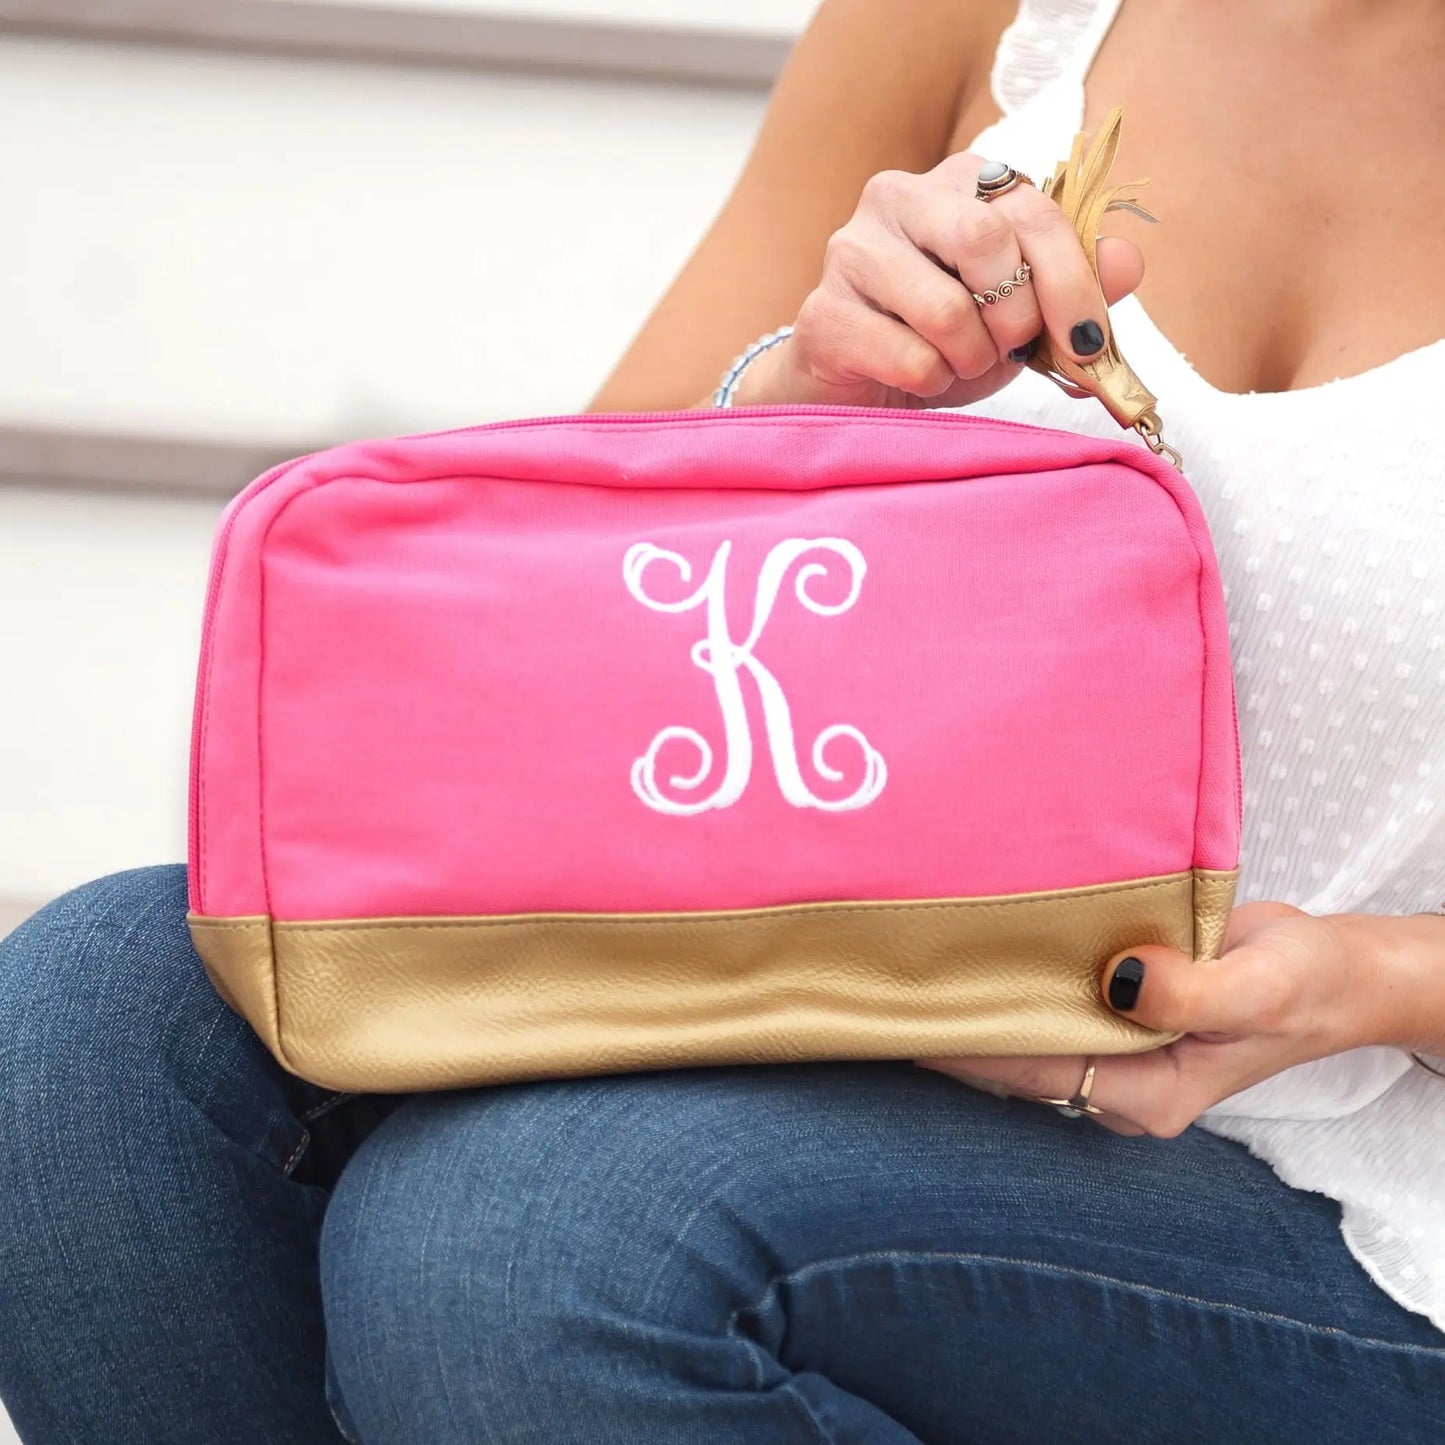 Hot Pink Cabana Cosmetic Bag